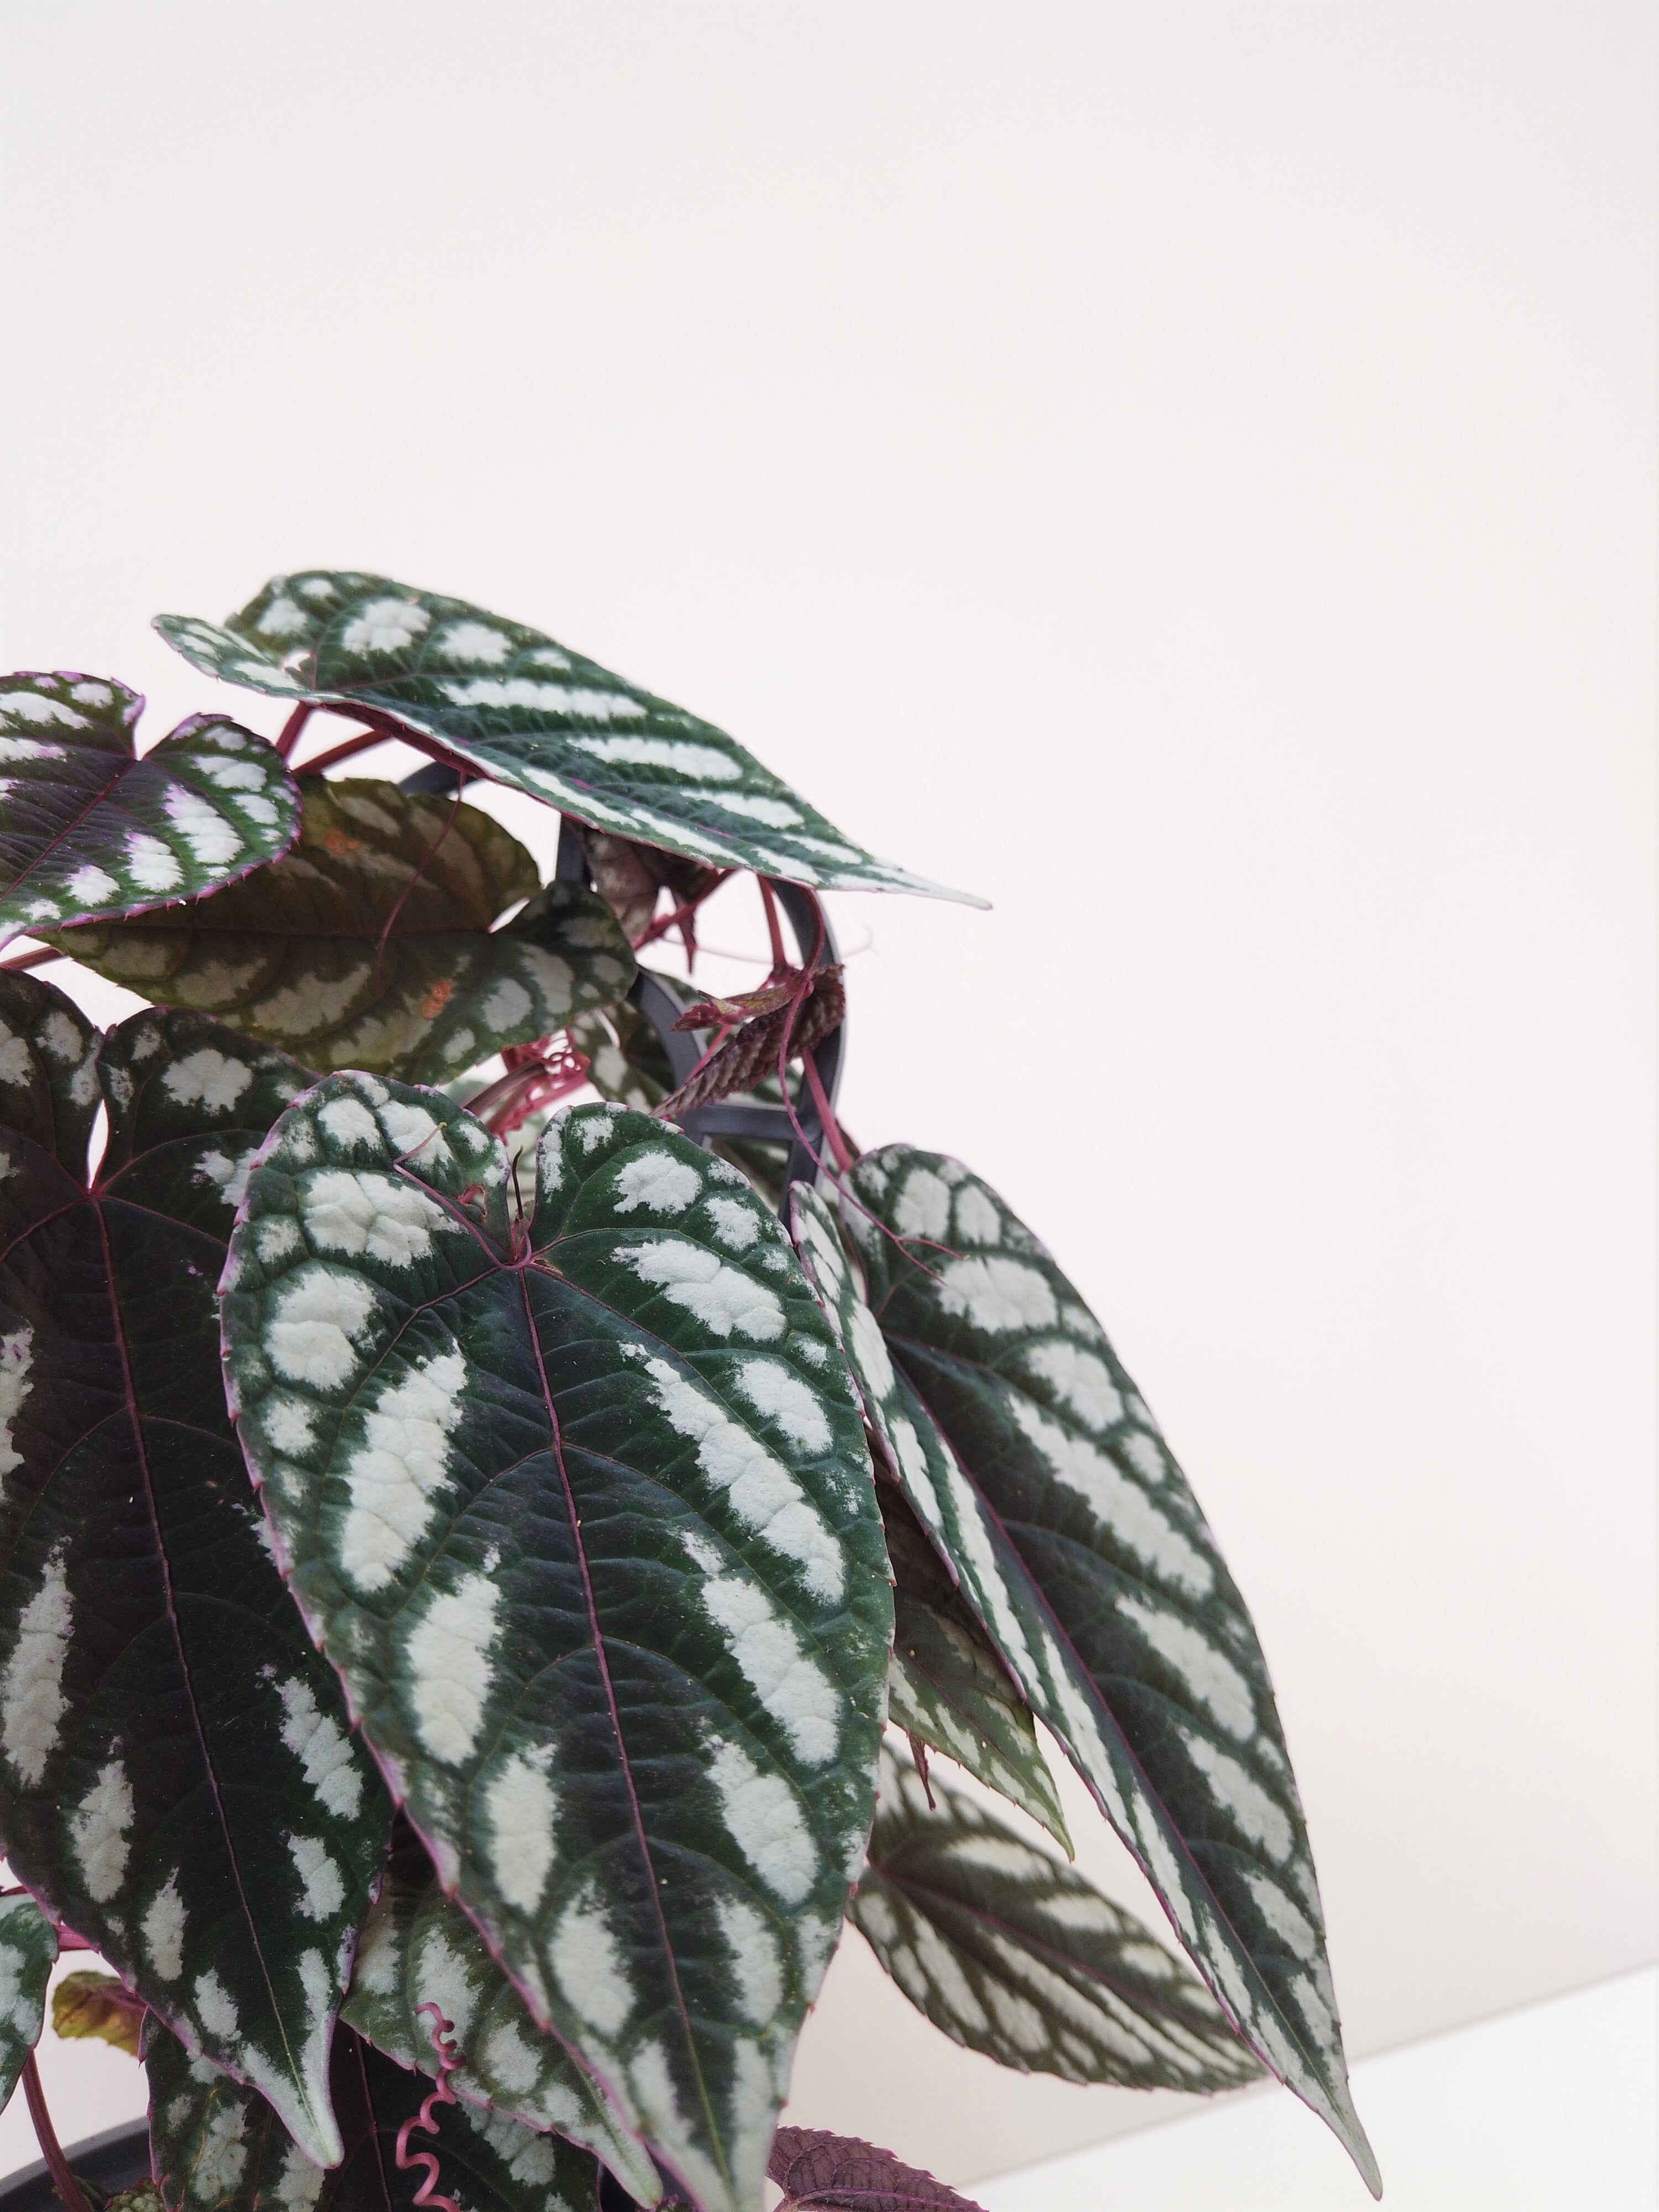 Begonia Rex Vine Cissus Discolor